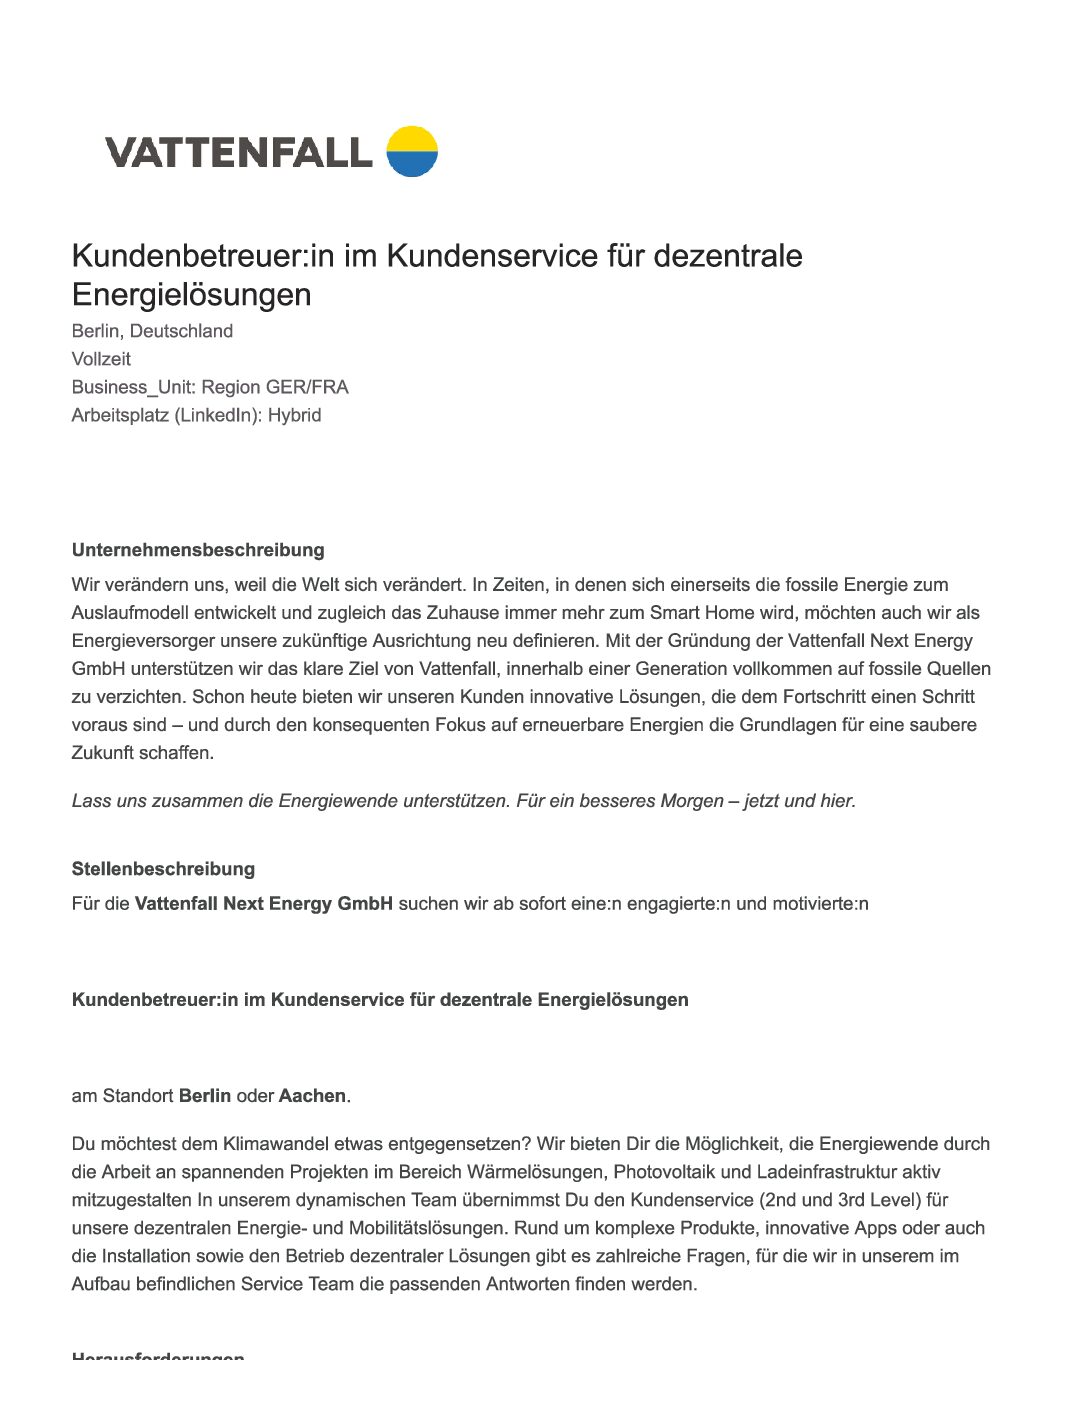 Vattenfall_Kundenbetreuer-im-Kundenservice-fuer-dezentrale-Energieloesungen-4-pdf  